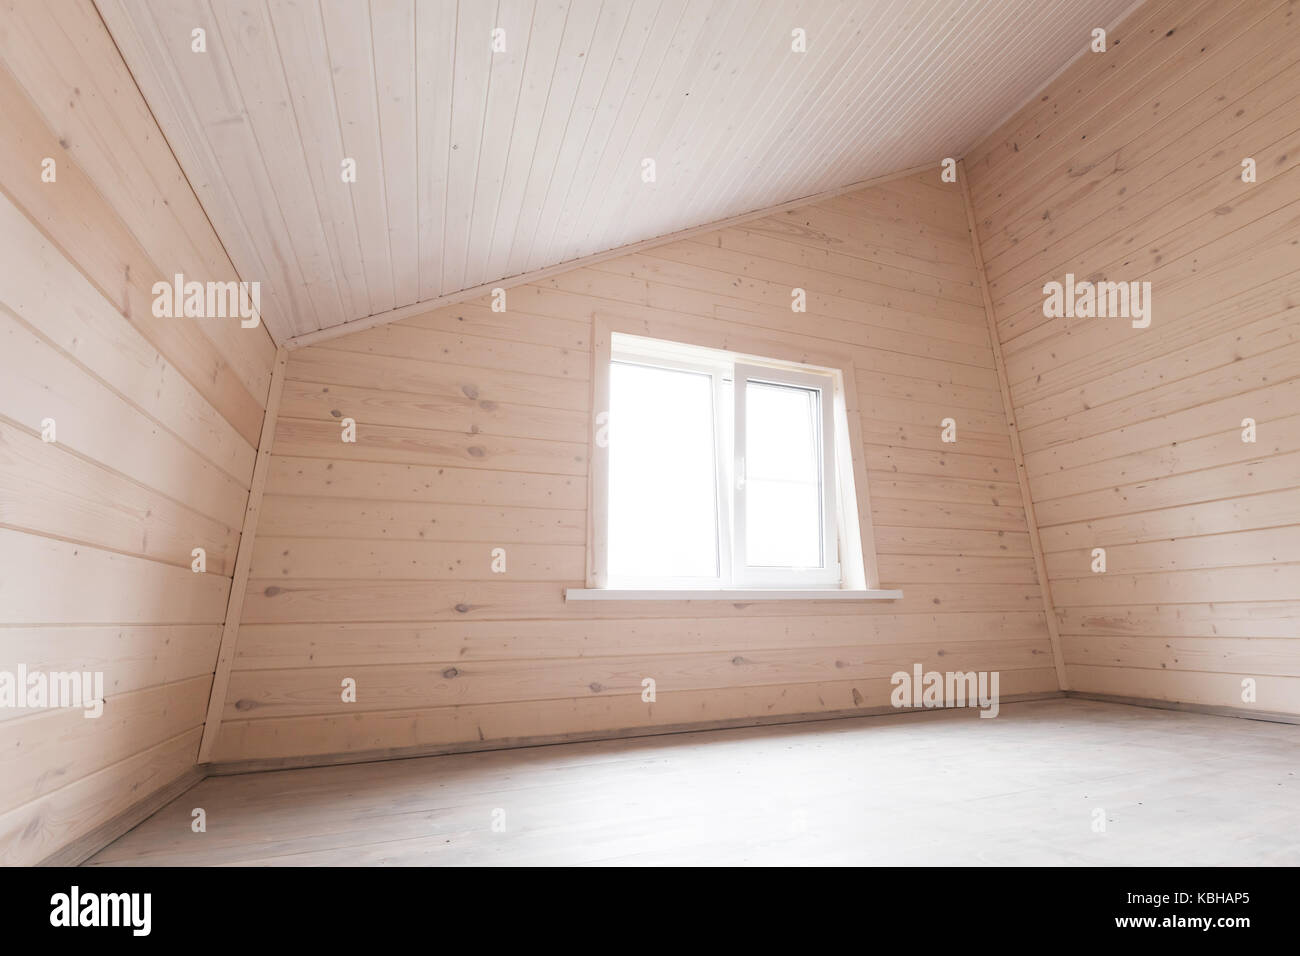 Leere Zimmer im Dachgeschoss Interieur, neue hölzerne Wände und Fenster Stockfoto